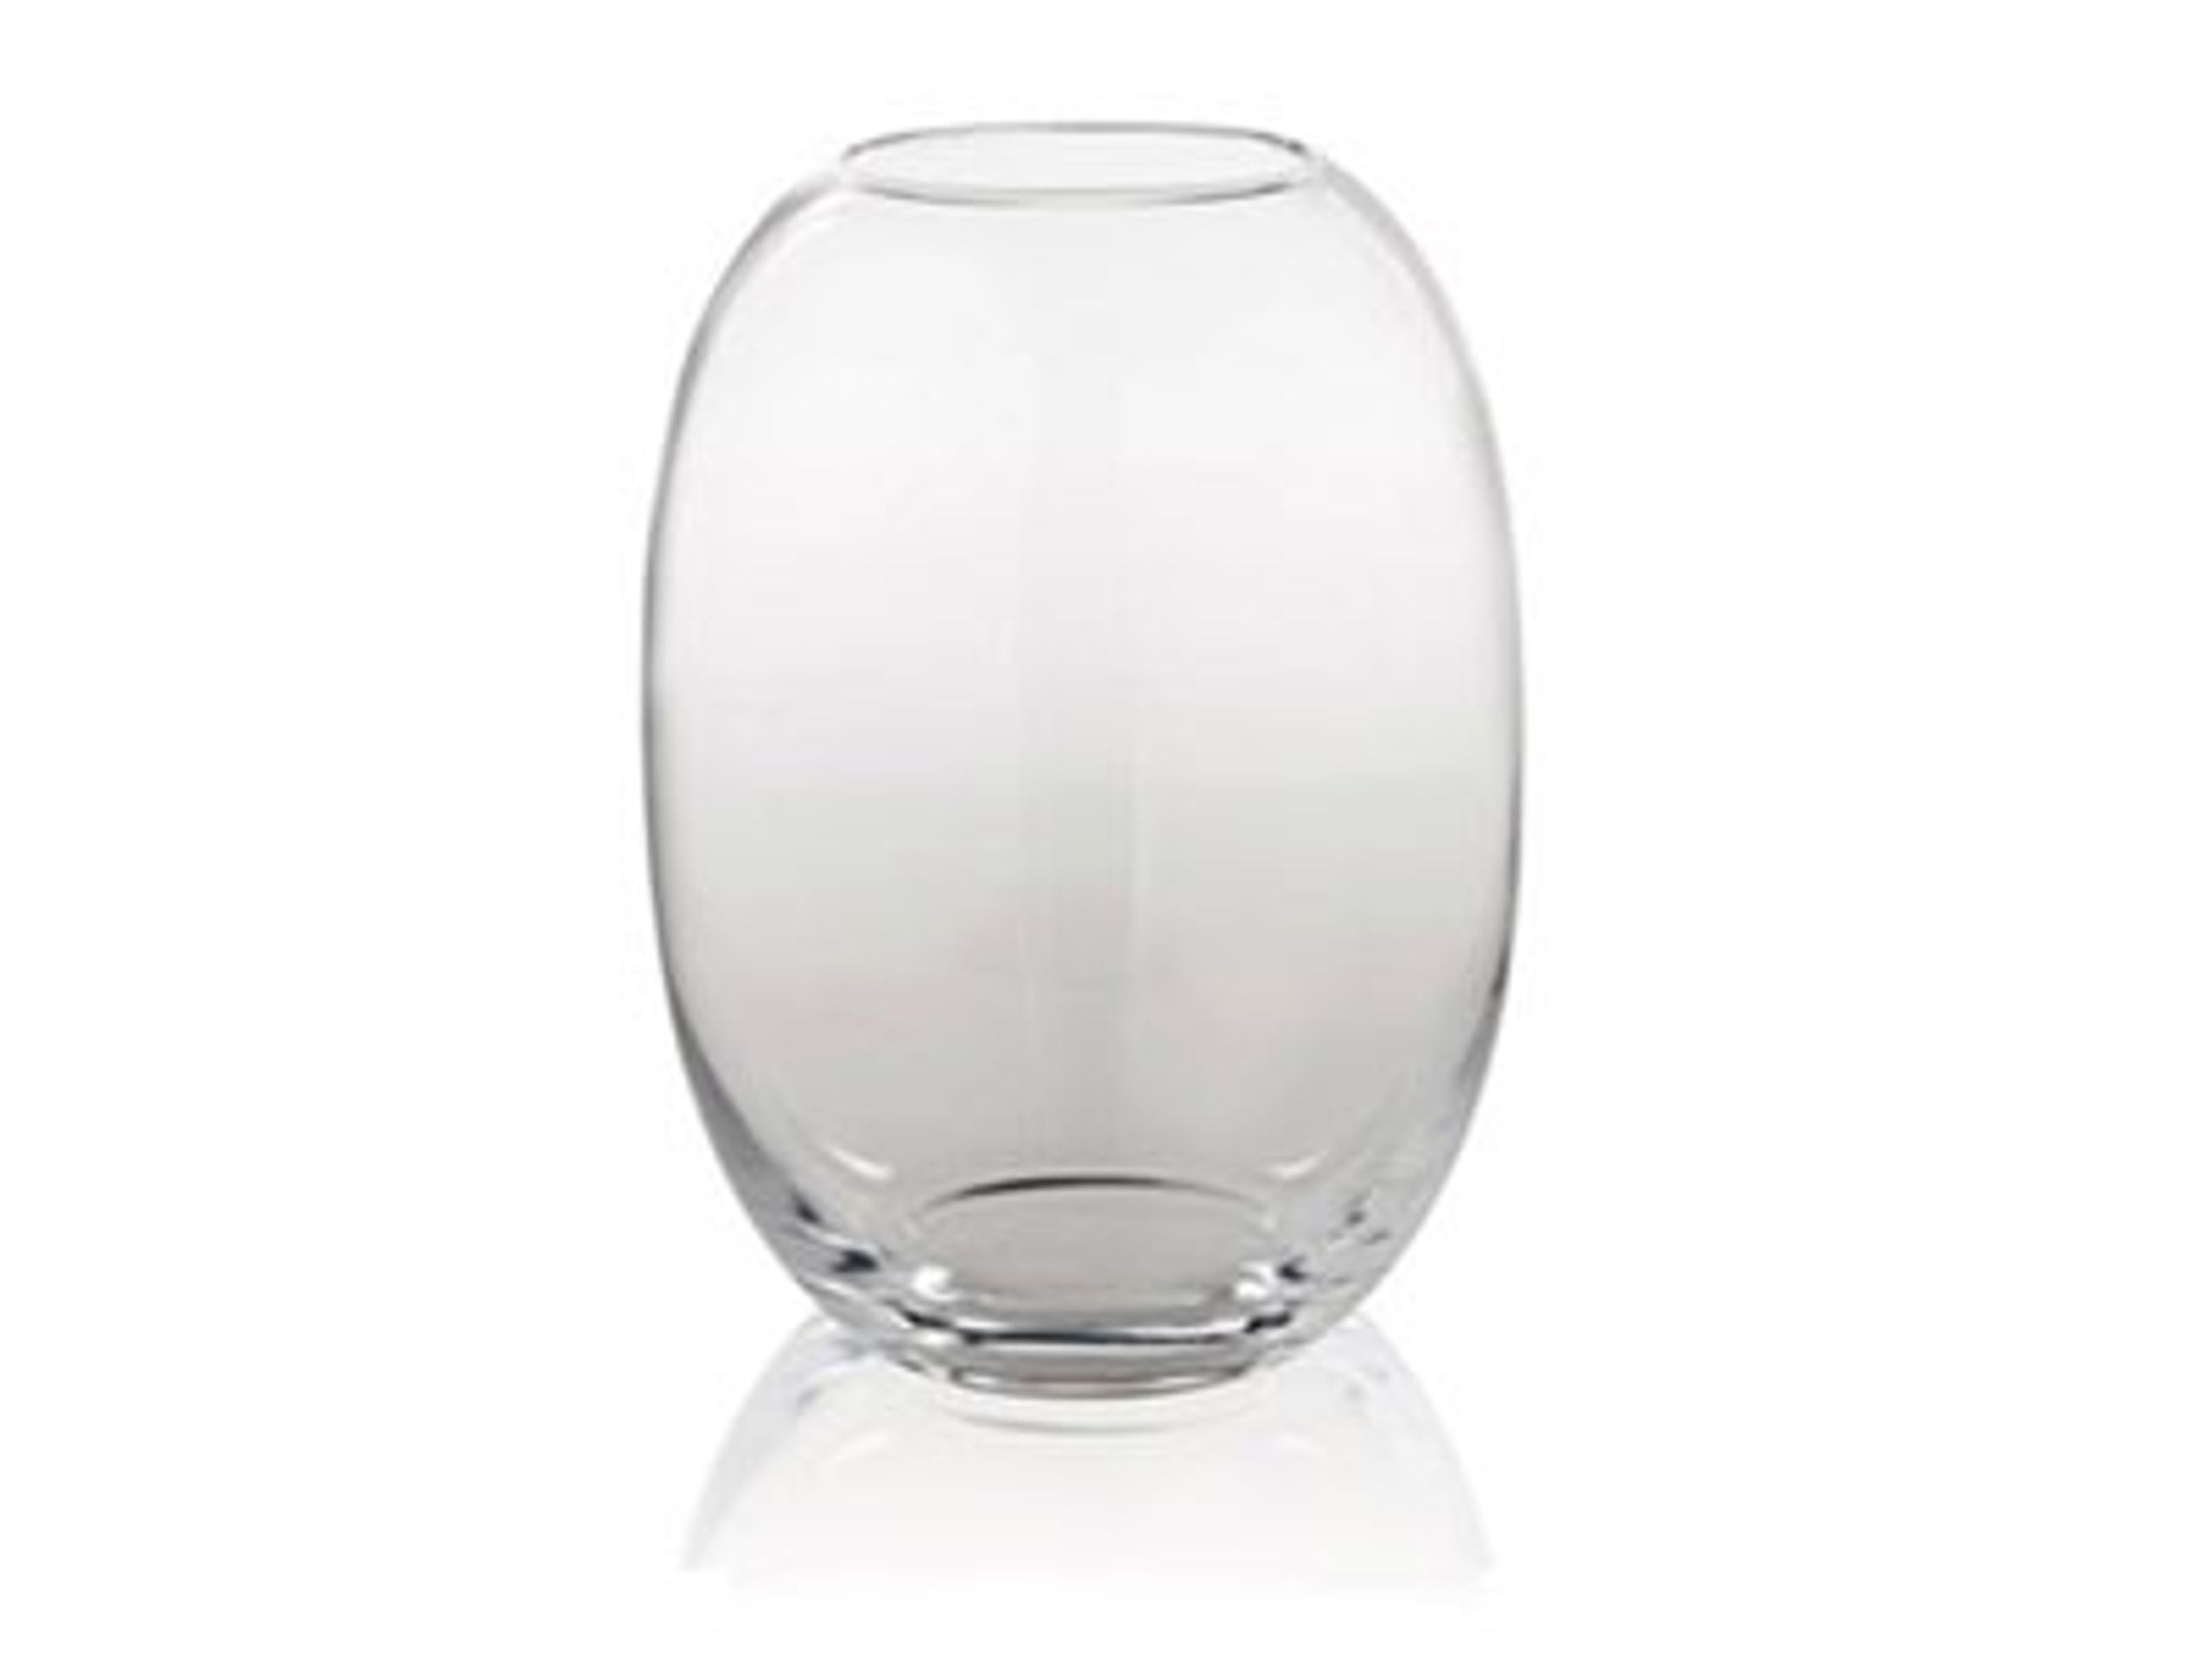 Piet Hein - Vase - Vase Glas  - Vase glas 30 cm - KLAR